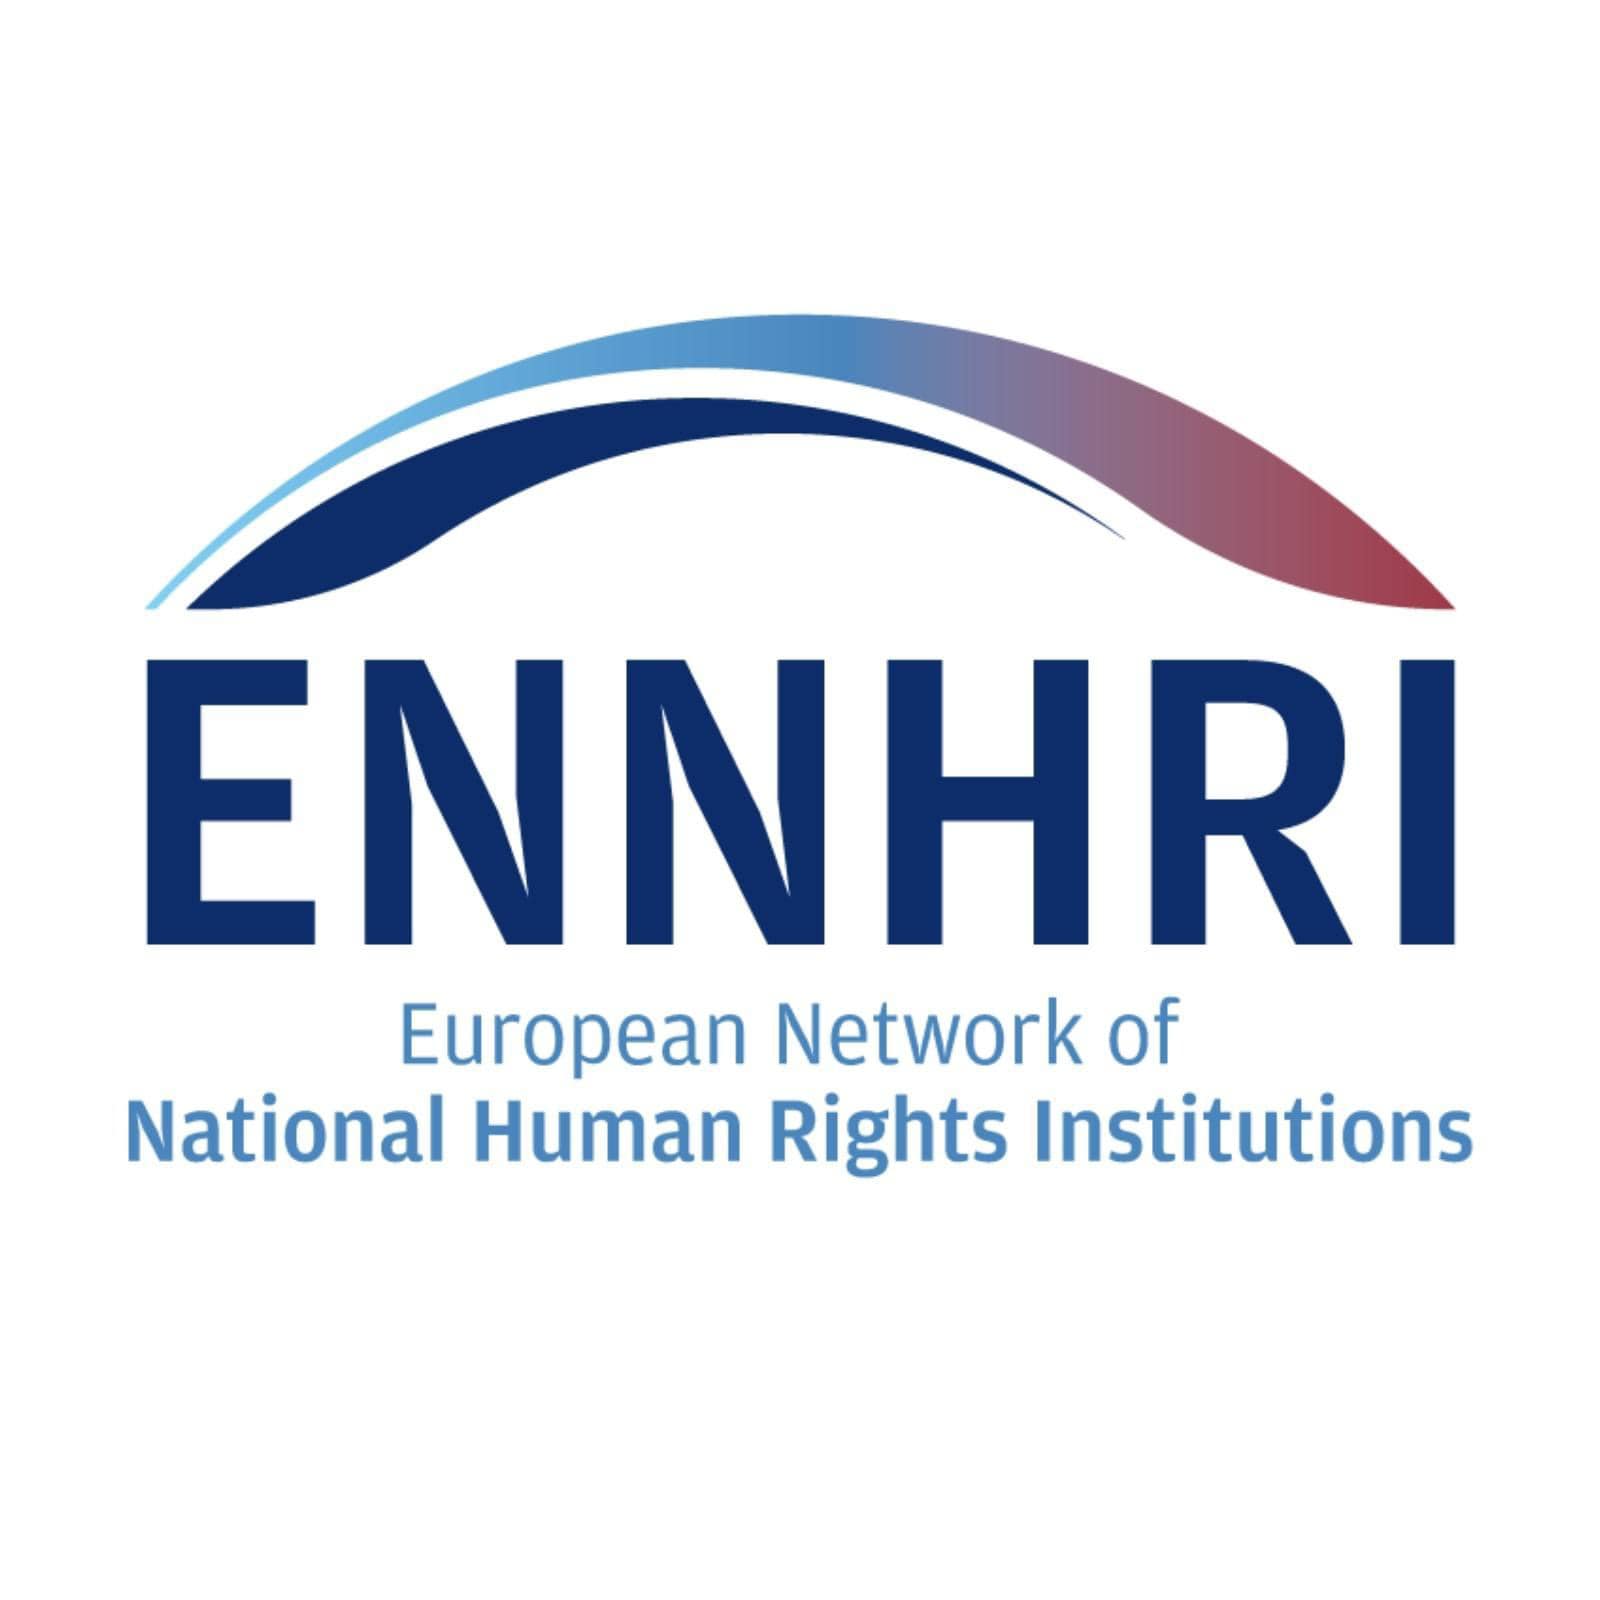 Մարդու իրավունքների ազգային հաստատությունների եվրոպական ցանցի հայտարարությունը՝ ՀՀ ՄԻՊ-ի նկատմամբ քաղաքական գործիչների կողմից սպառնալիքների և հարձակումների առնչությամբ